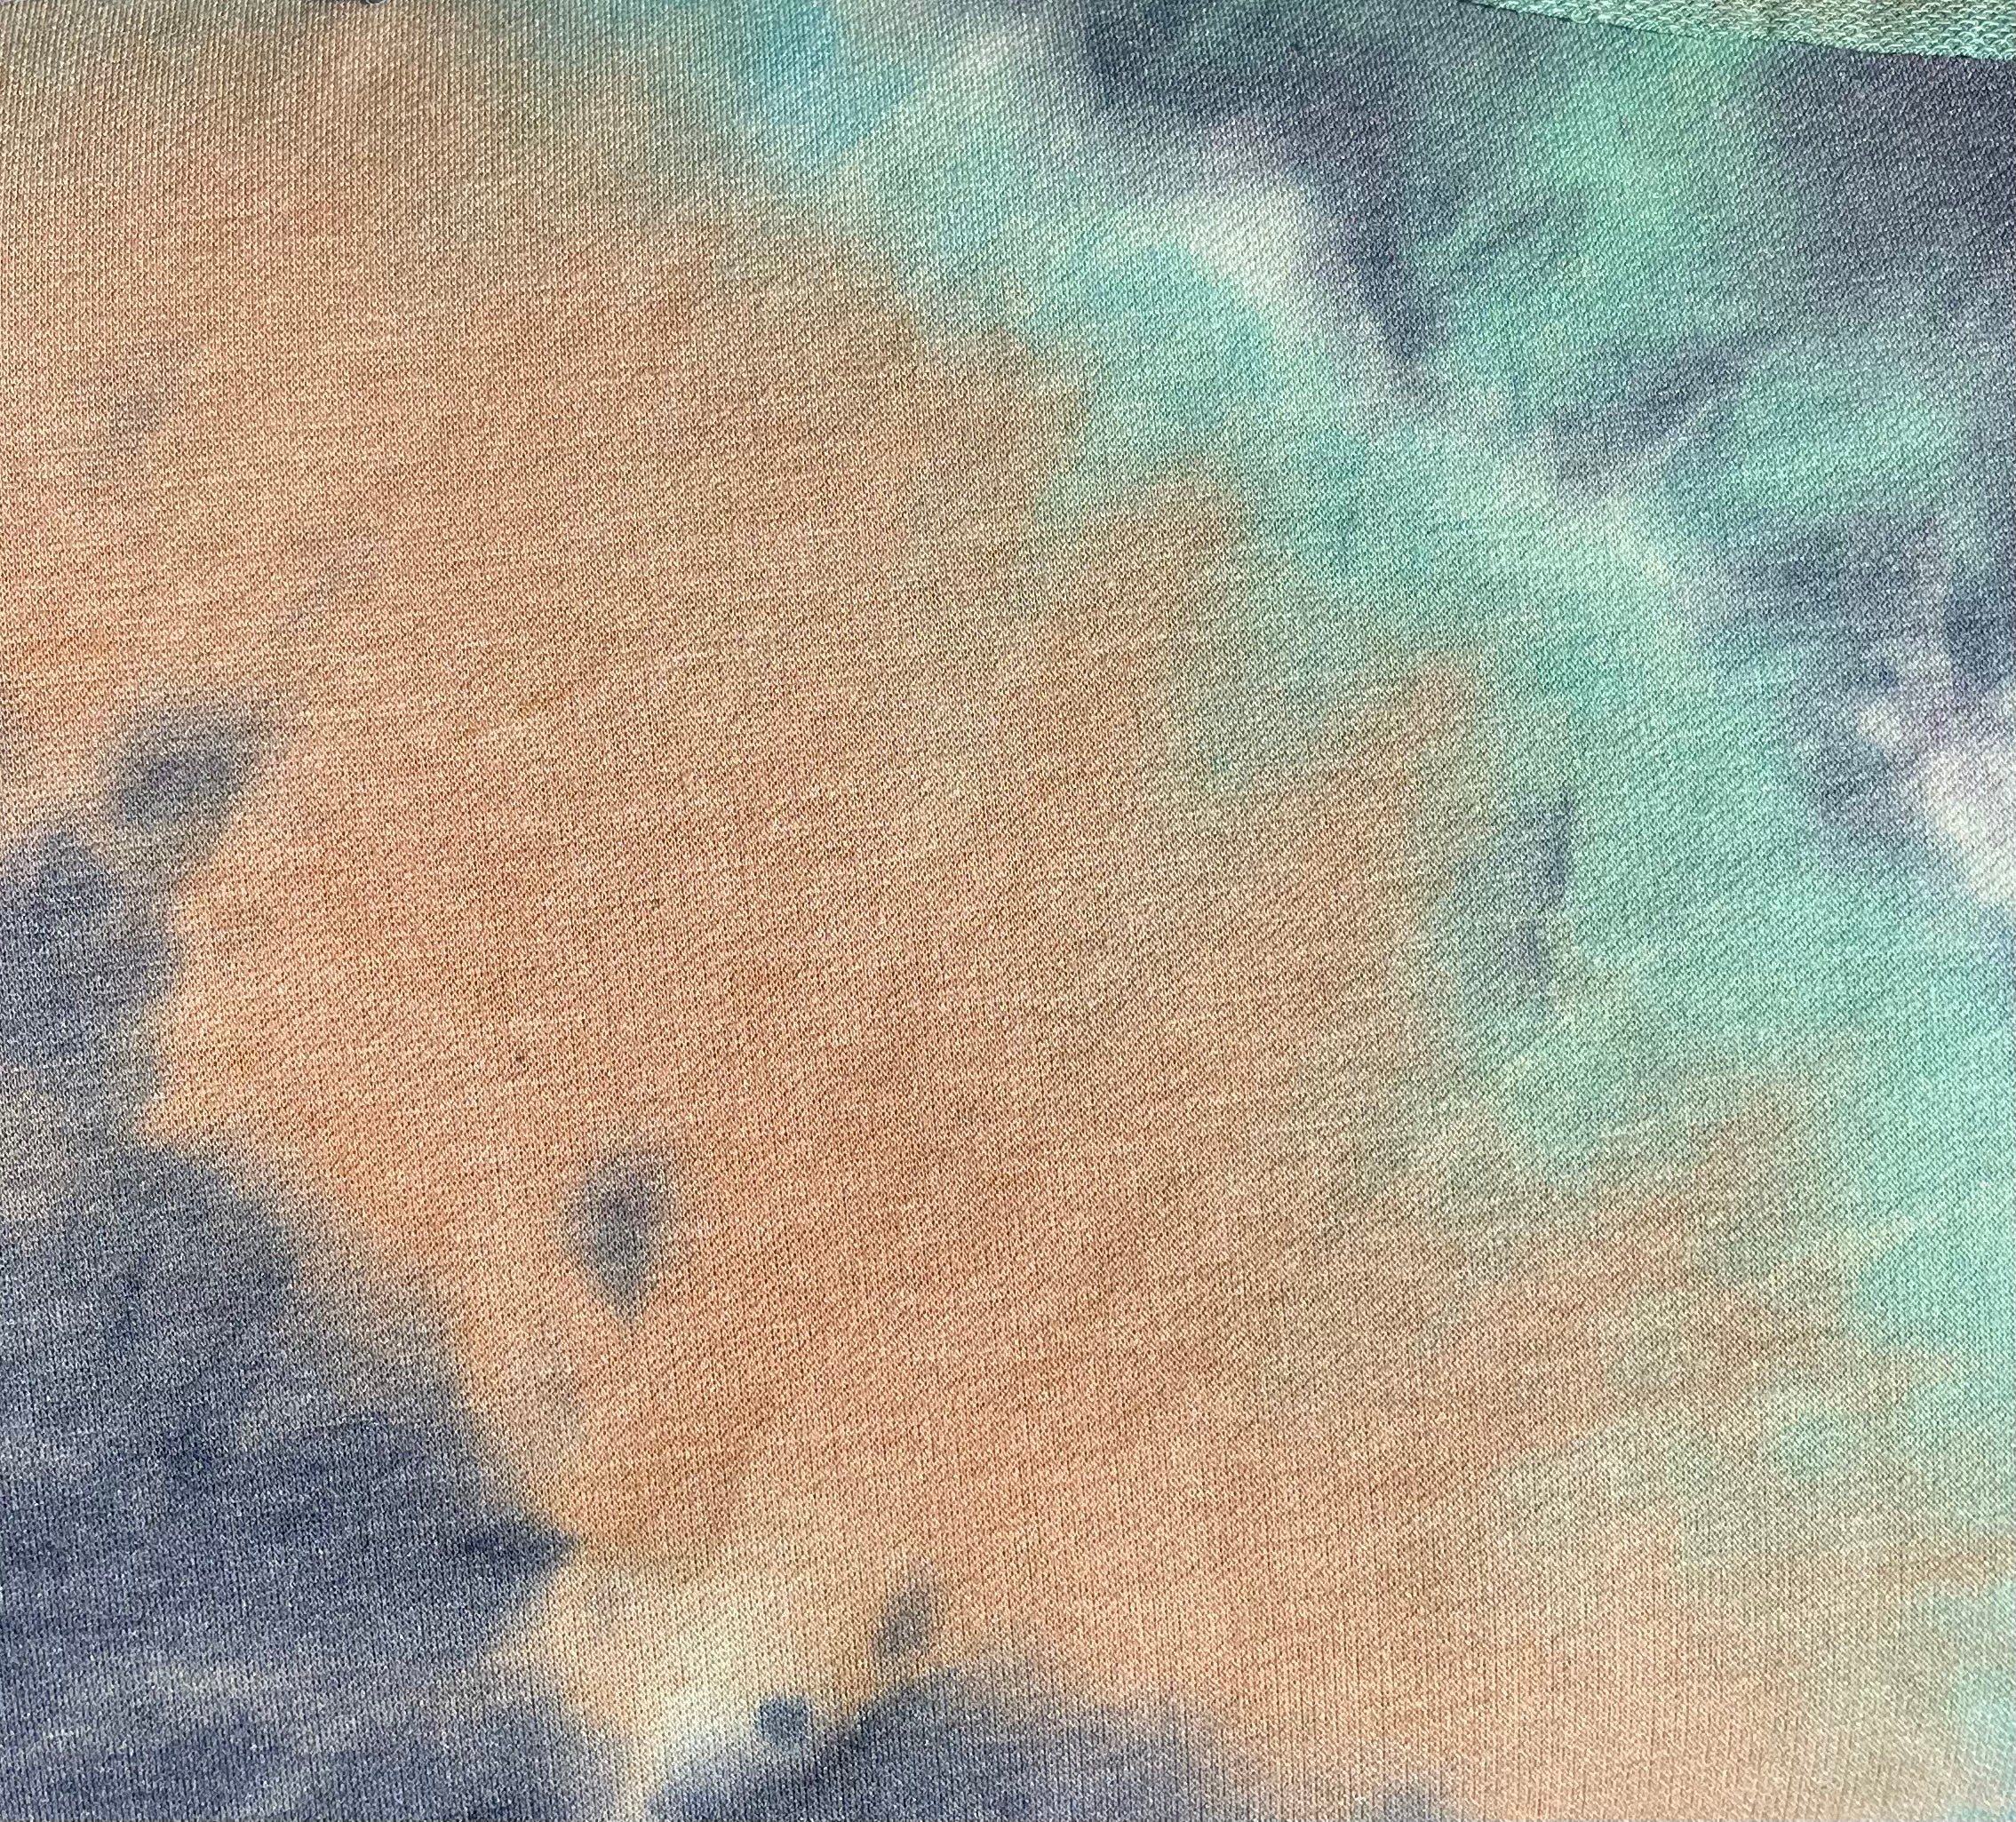 Turquoise/Indigo/Sand Tie Dye French Terry